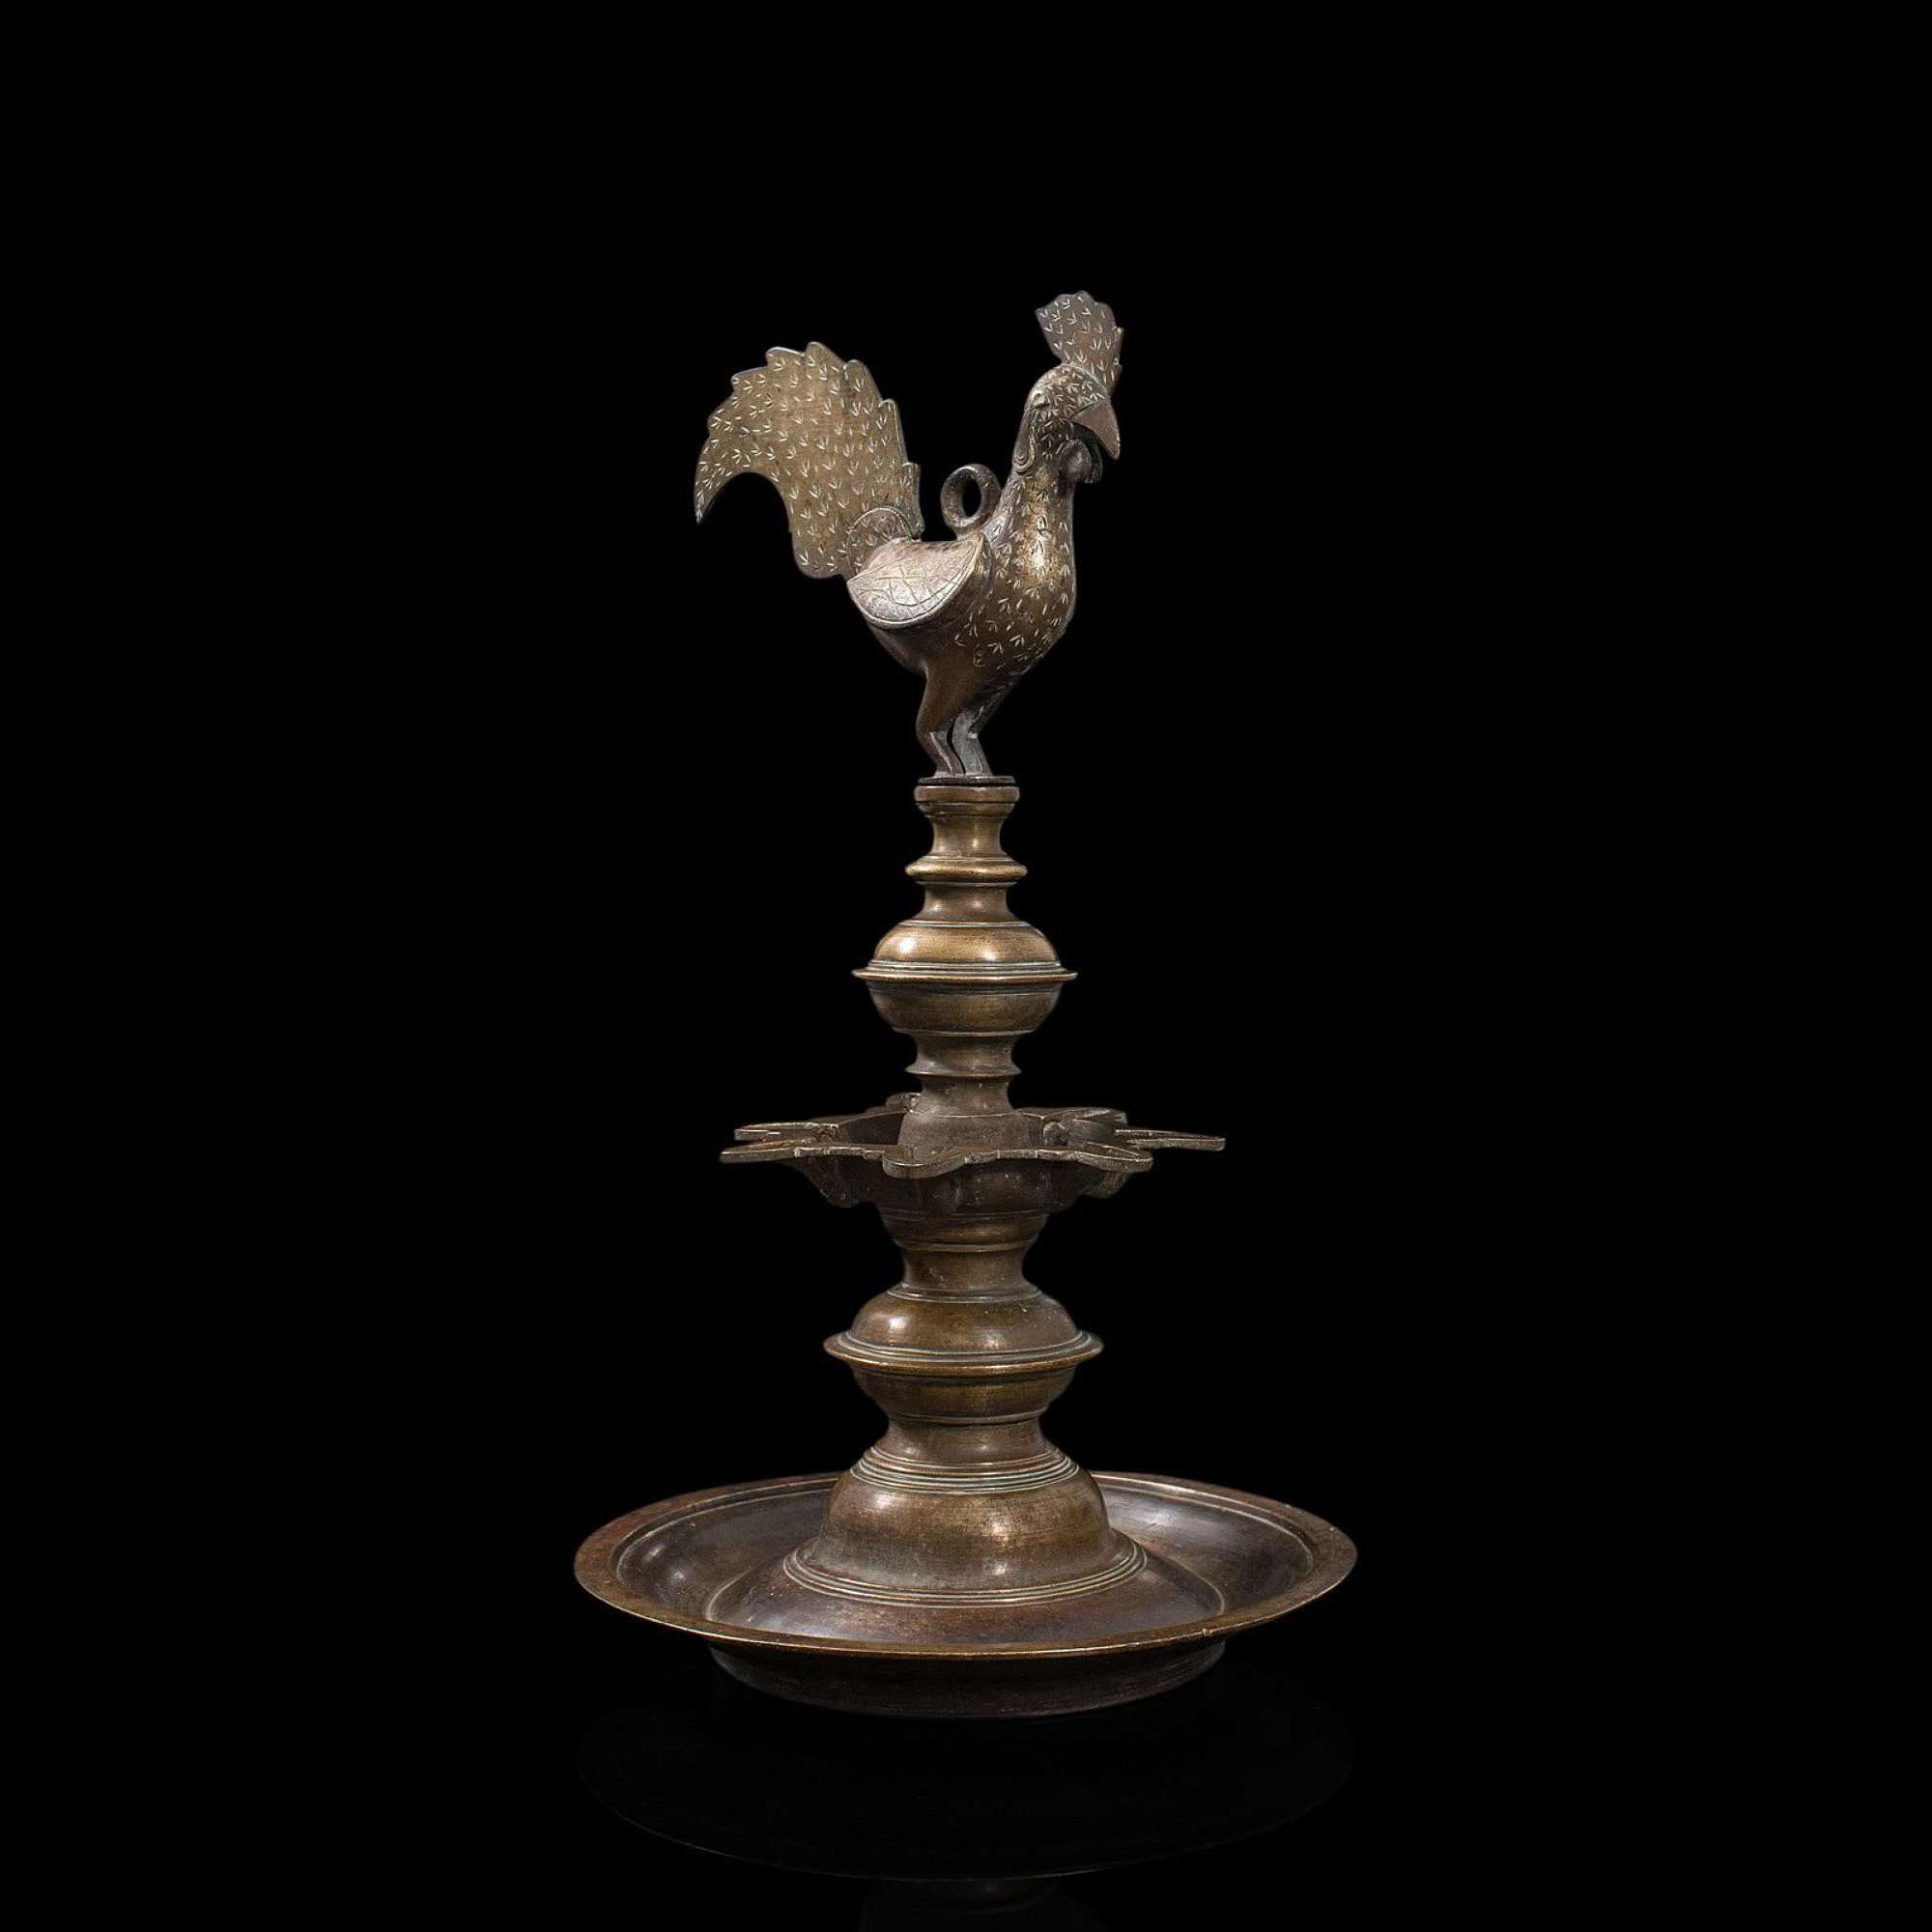 Antique Deccan Oil Lamp, Indian, Bronze, Hamsa, Bird C.1900